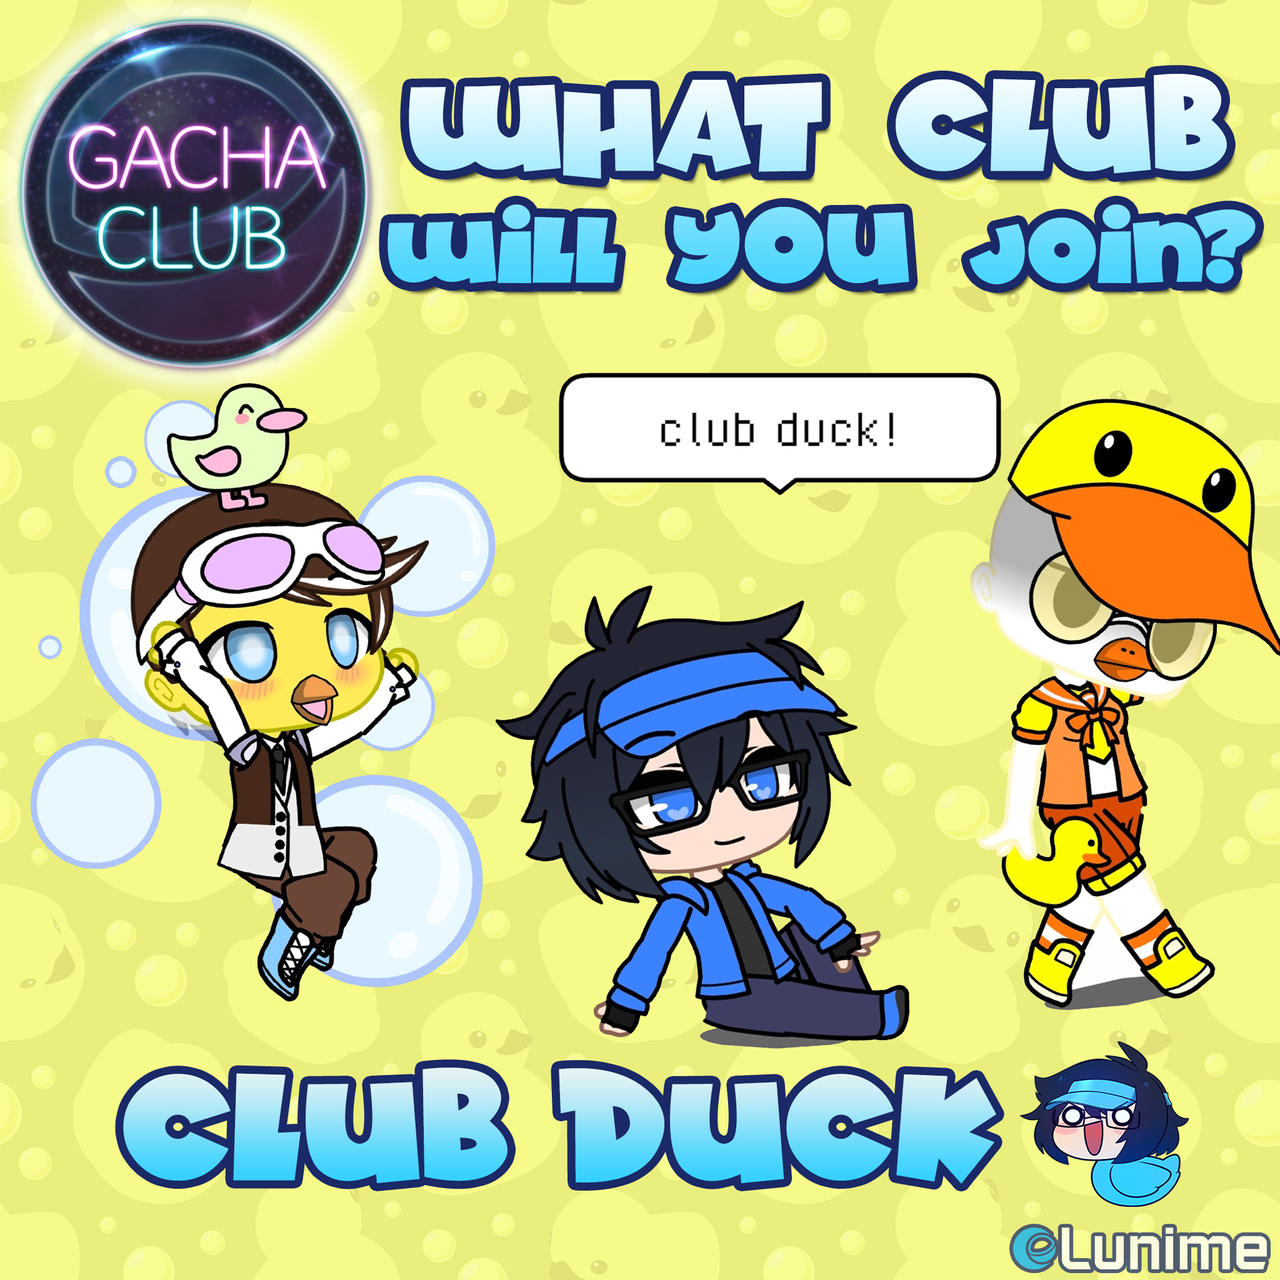 Gacha Club Edit by LunimeGames on DeviantArt